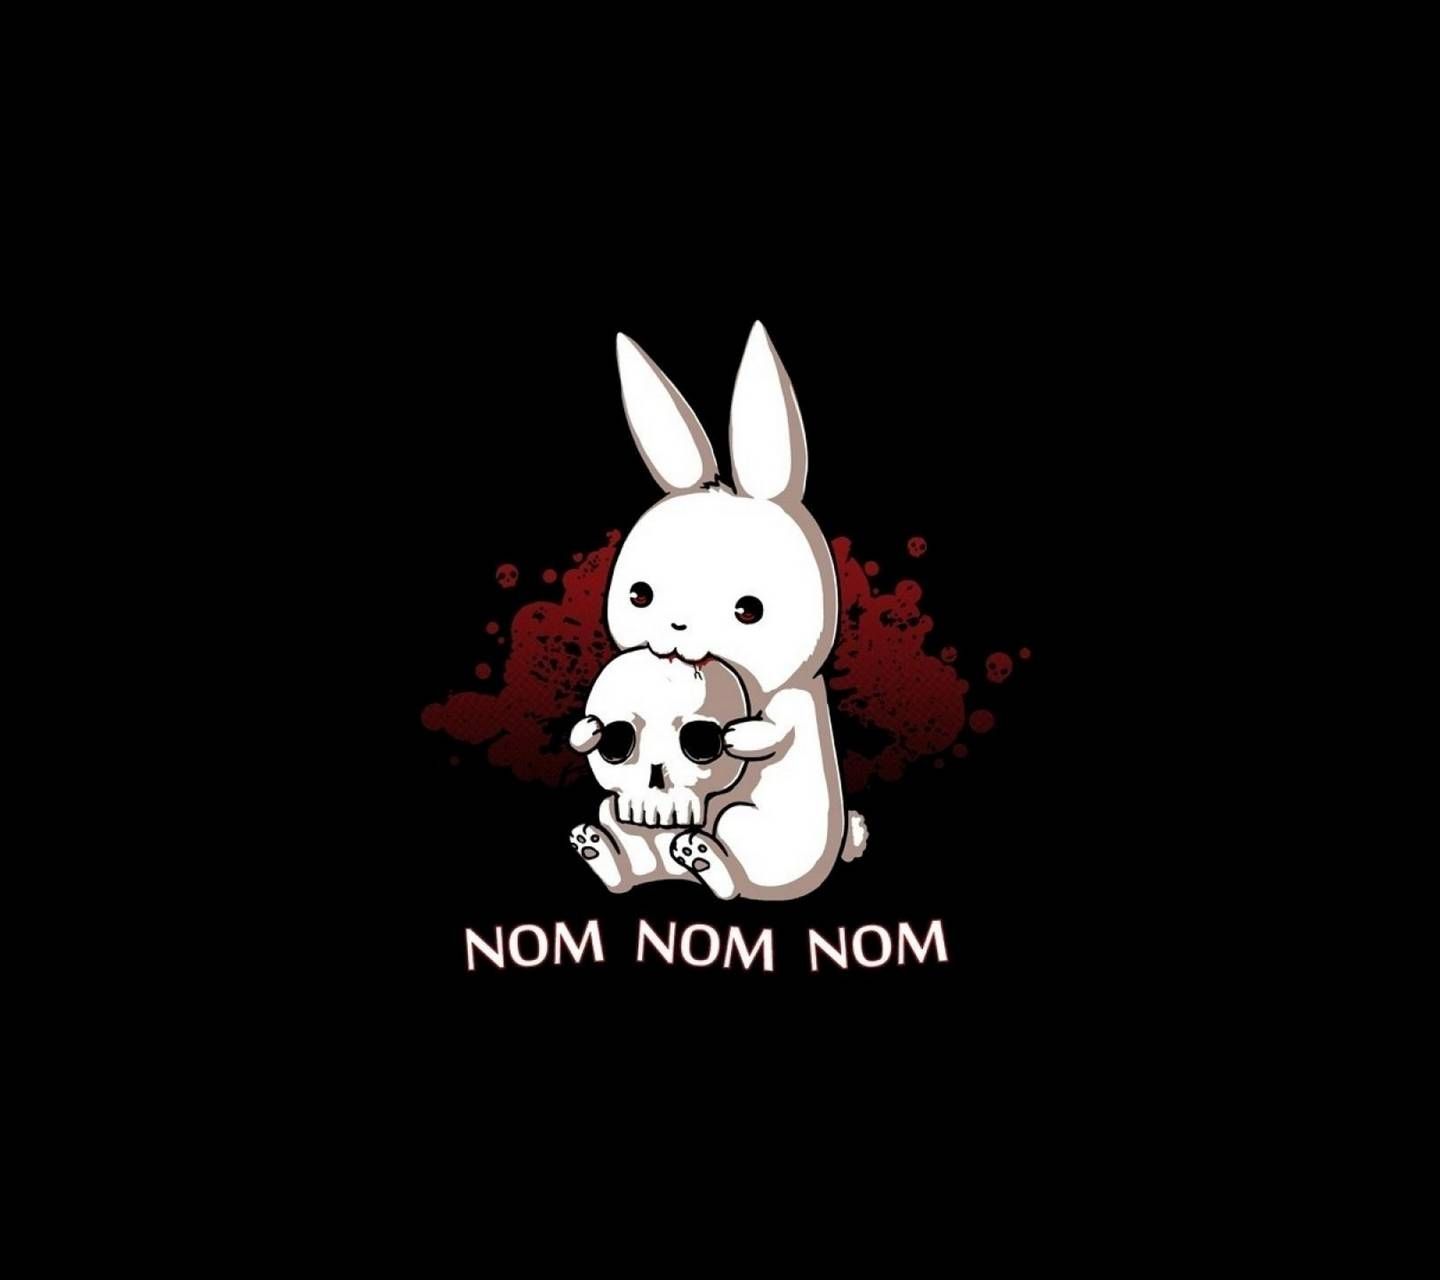 Evil Bunny. Bunny wallpaper, Evil bunny, Cute cartoon drawings